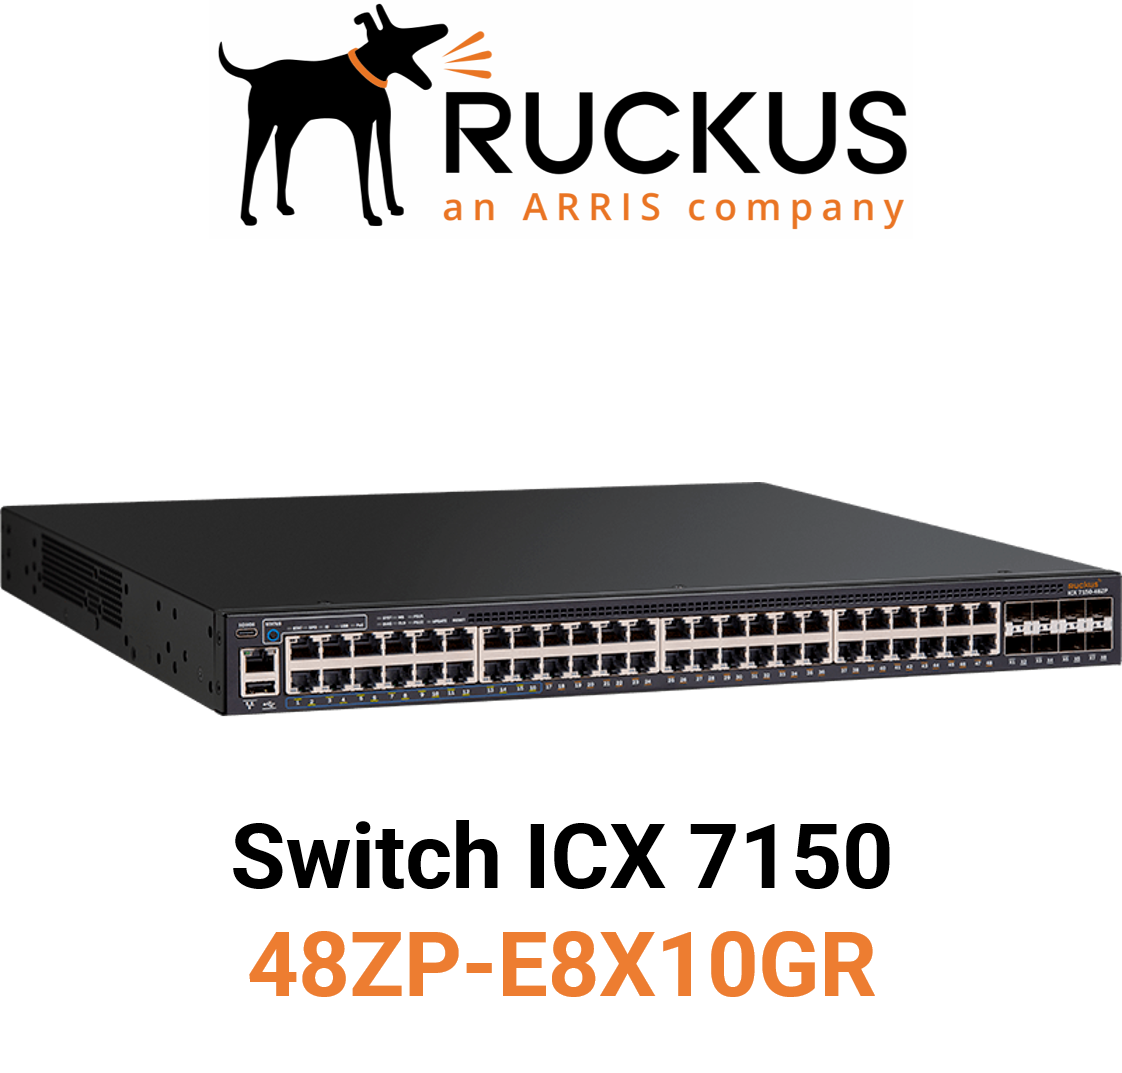 Ruckus ICX7150-48ZP-E8X10GR Switch